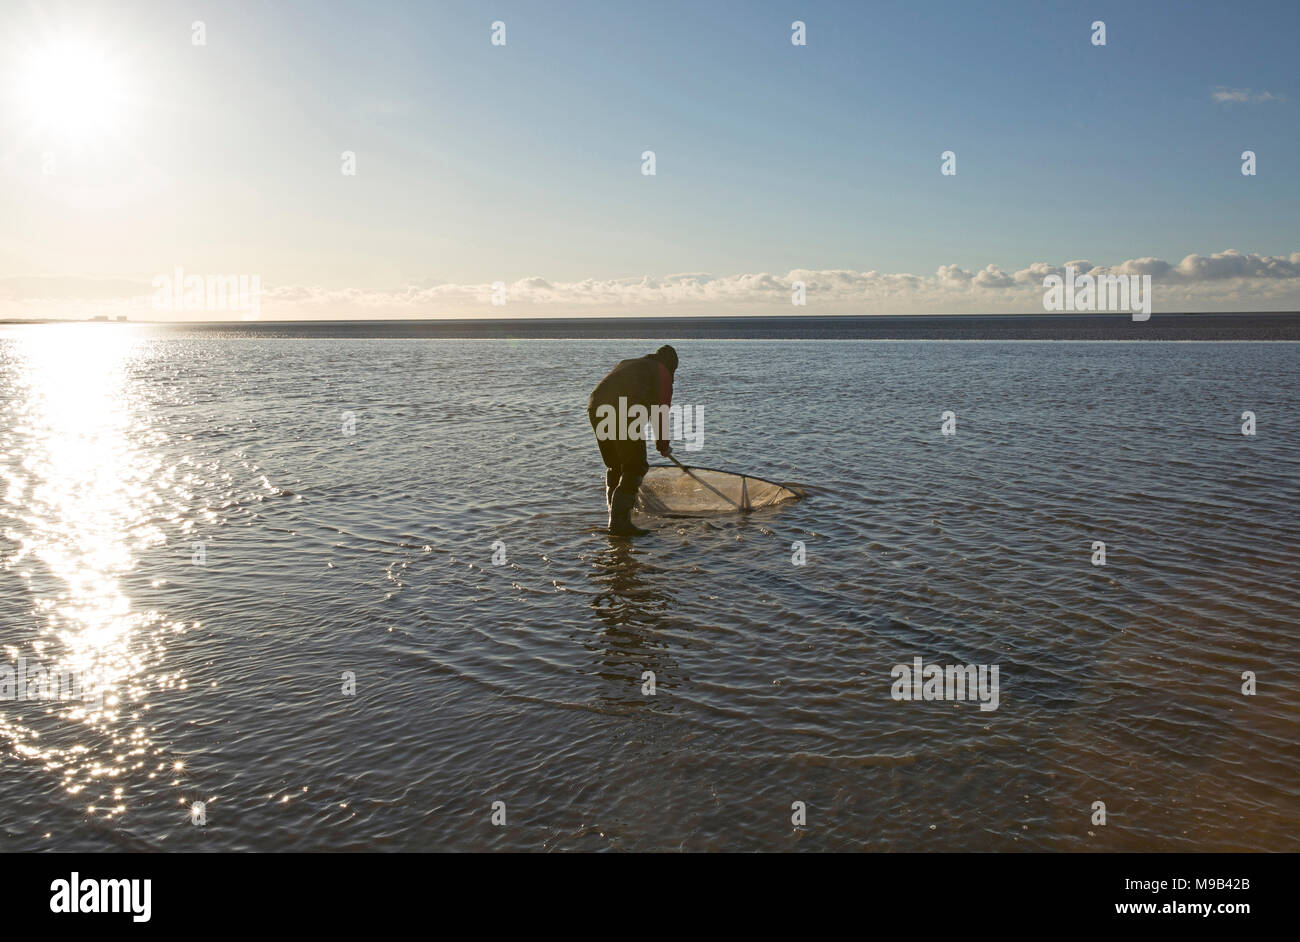 Un ricreative pescatore di gamberetti nella baia di Morecambe situata a bassa marea cercando il famoso brown gamberetti della specie Crangon crangon, utilizzando una casa fatto spingere net. Moreca Foto Stock